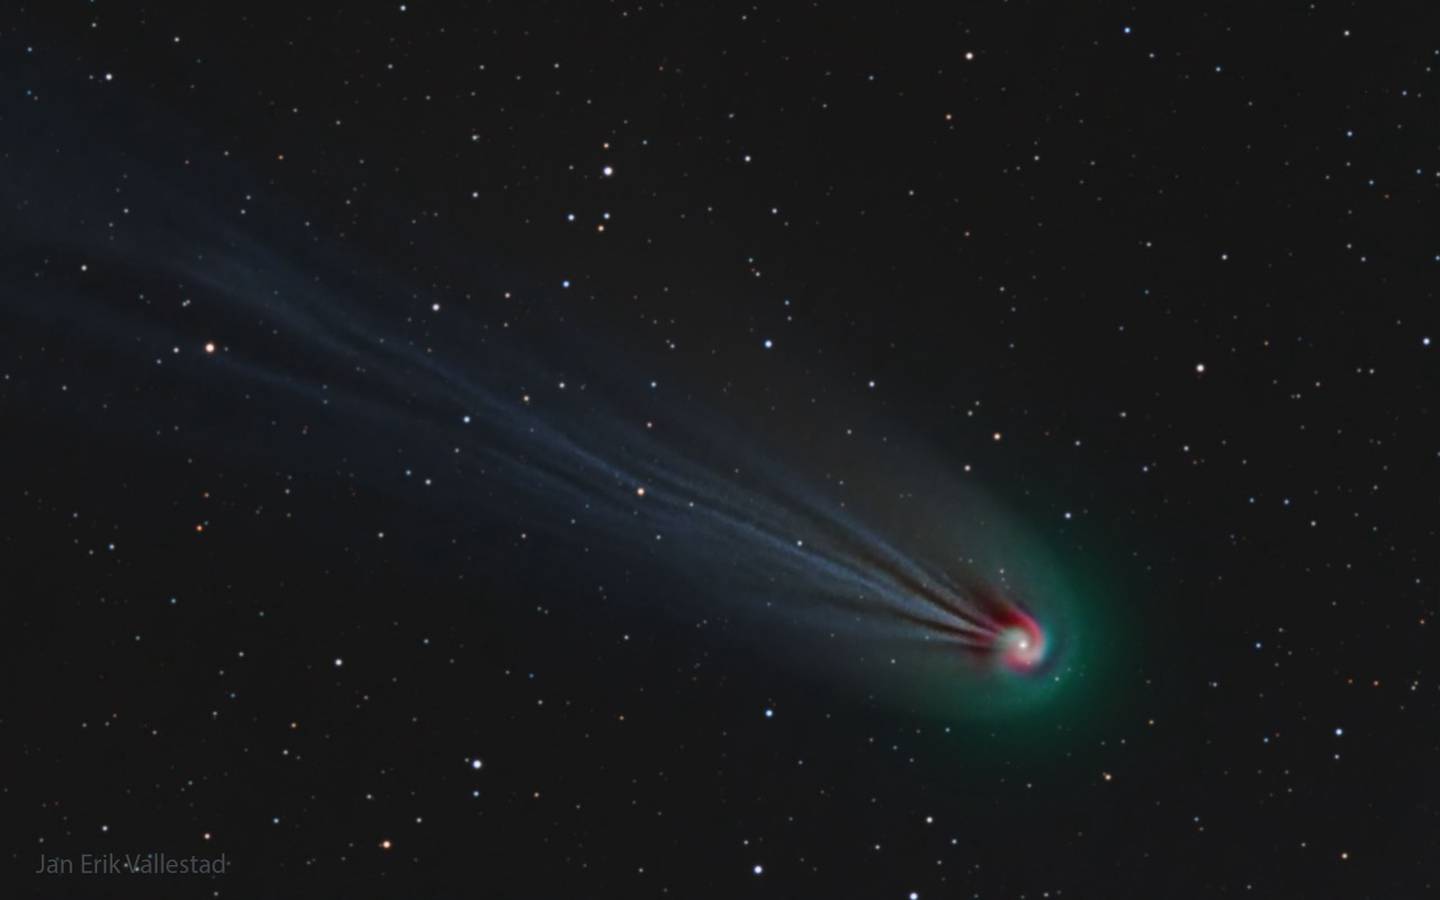 Esta fotografía del Cometa Diablo realizada por Jan Erik Vallestad ganó como Fotografía Astronómica del Día (NASA) el 18 de marzo de 2024. Publicada por la National Geographic